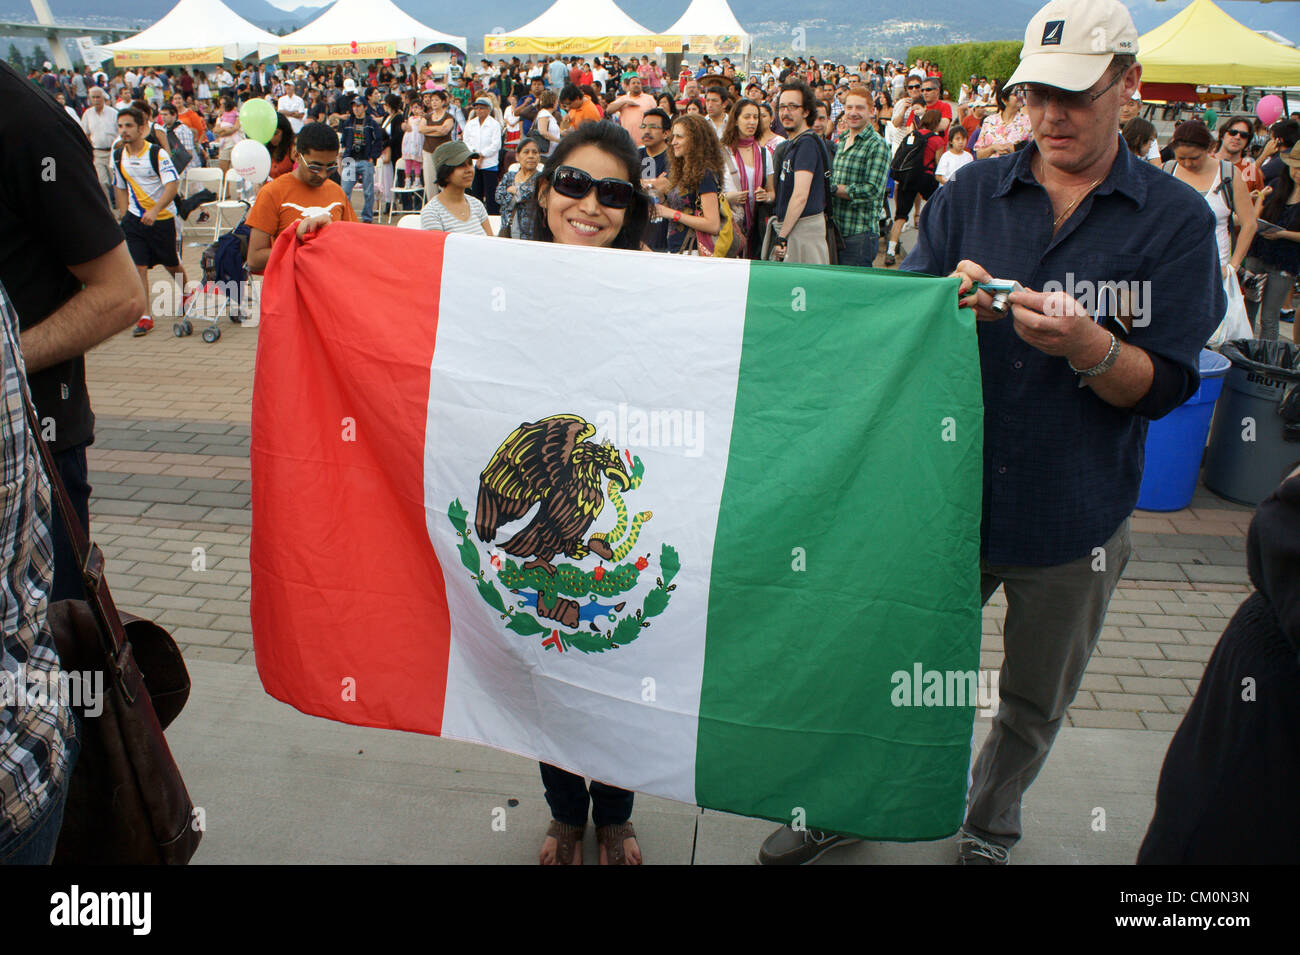 Frau hält eine mexikanische Flagge in Mexiko Fest mexikanischen Unabhängigkeitstag feiern in Vancouver, British Columbia, Kanada Stockfoto